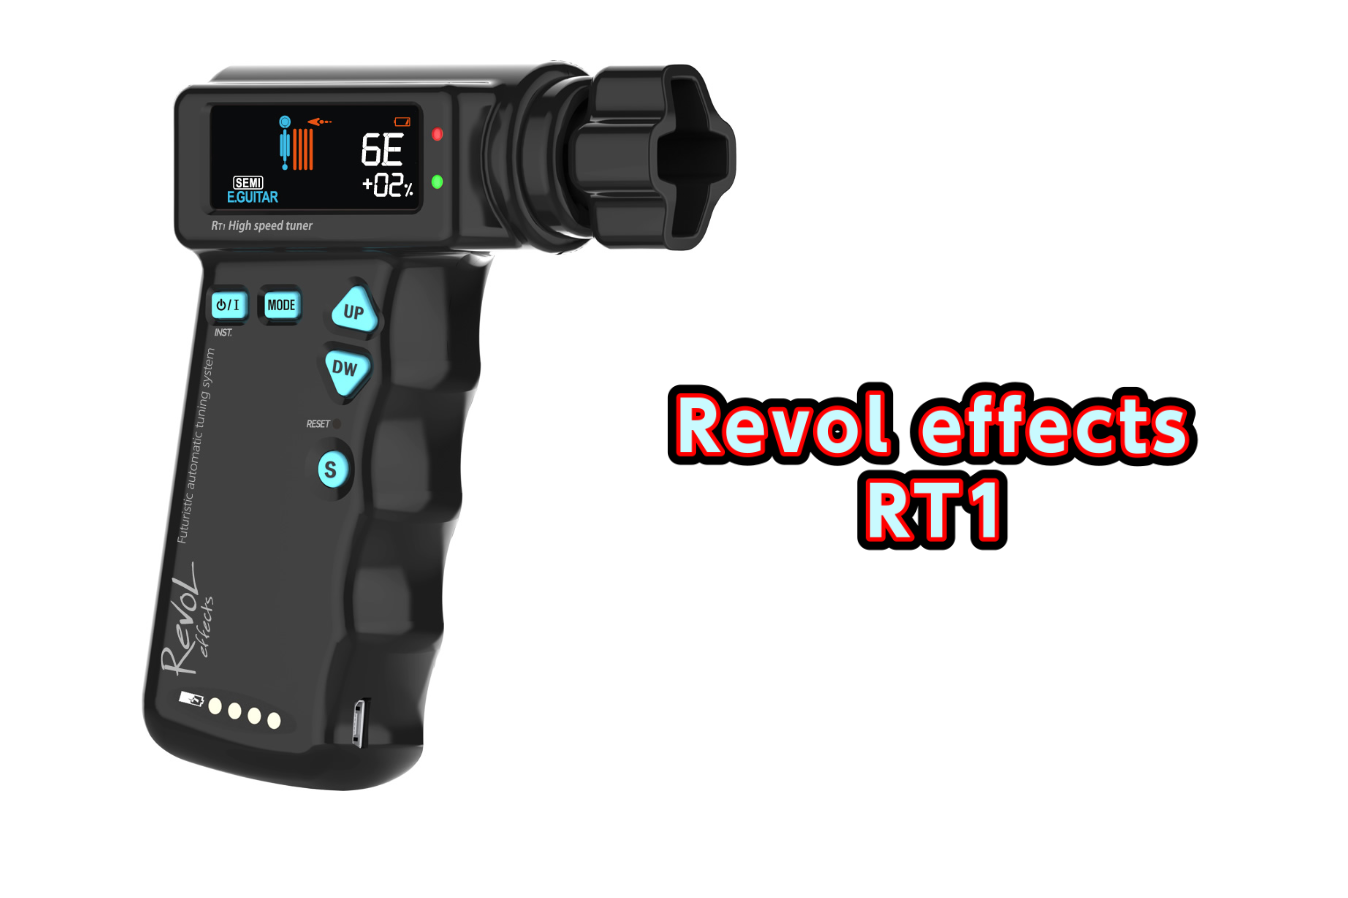 【チューナー】話題の新製品Revol effects RT1入荷のご案内